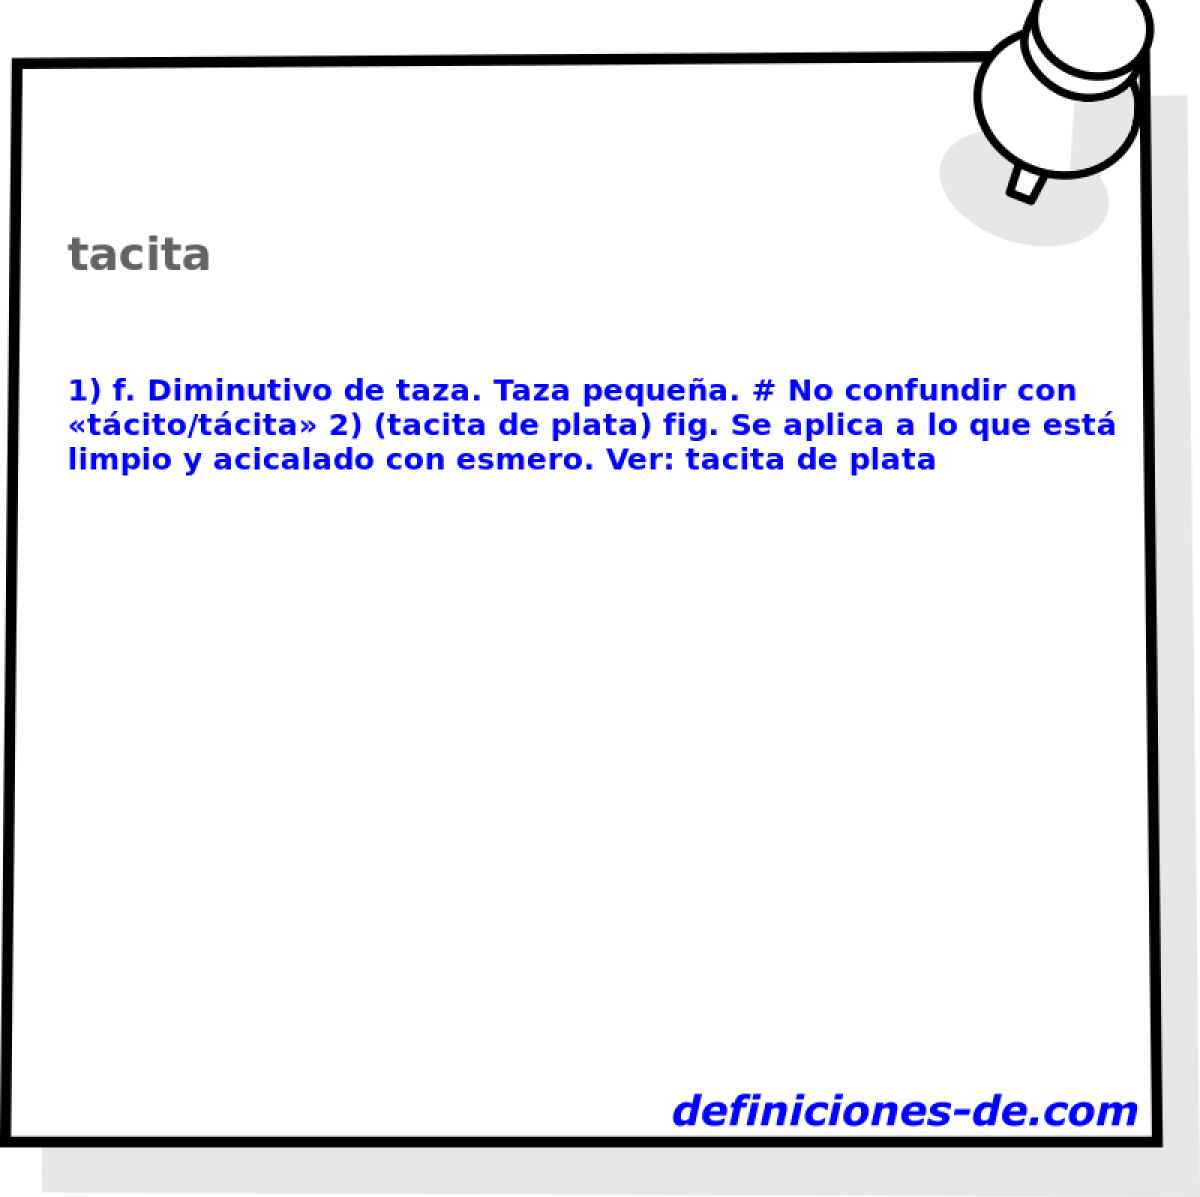 tacita 